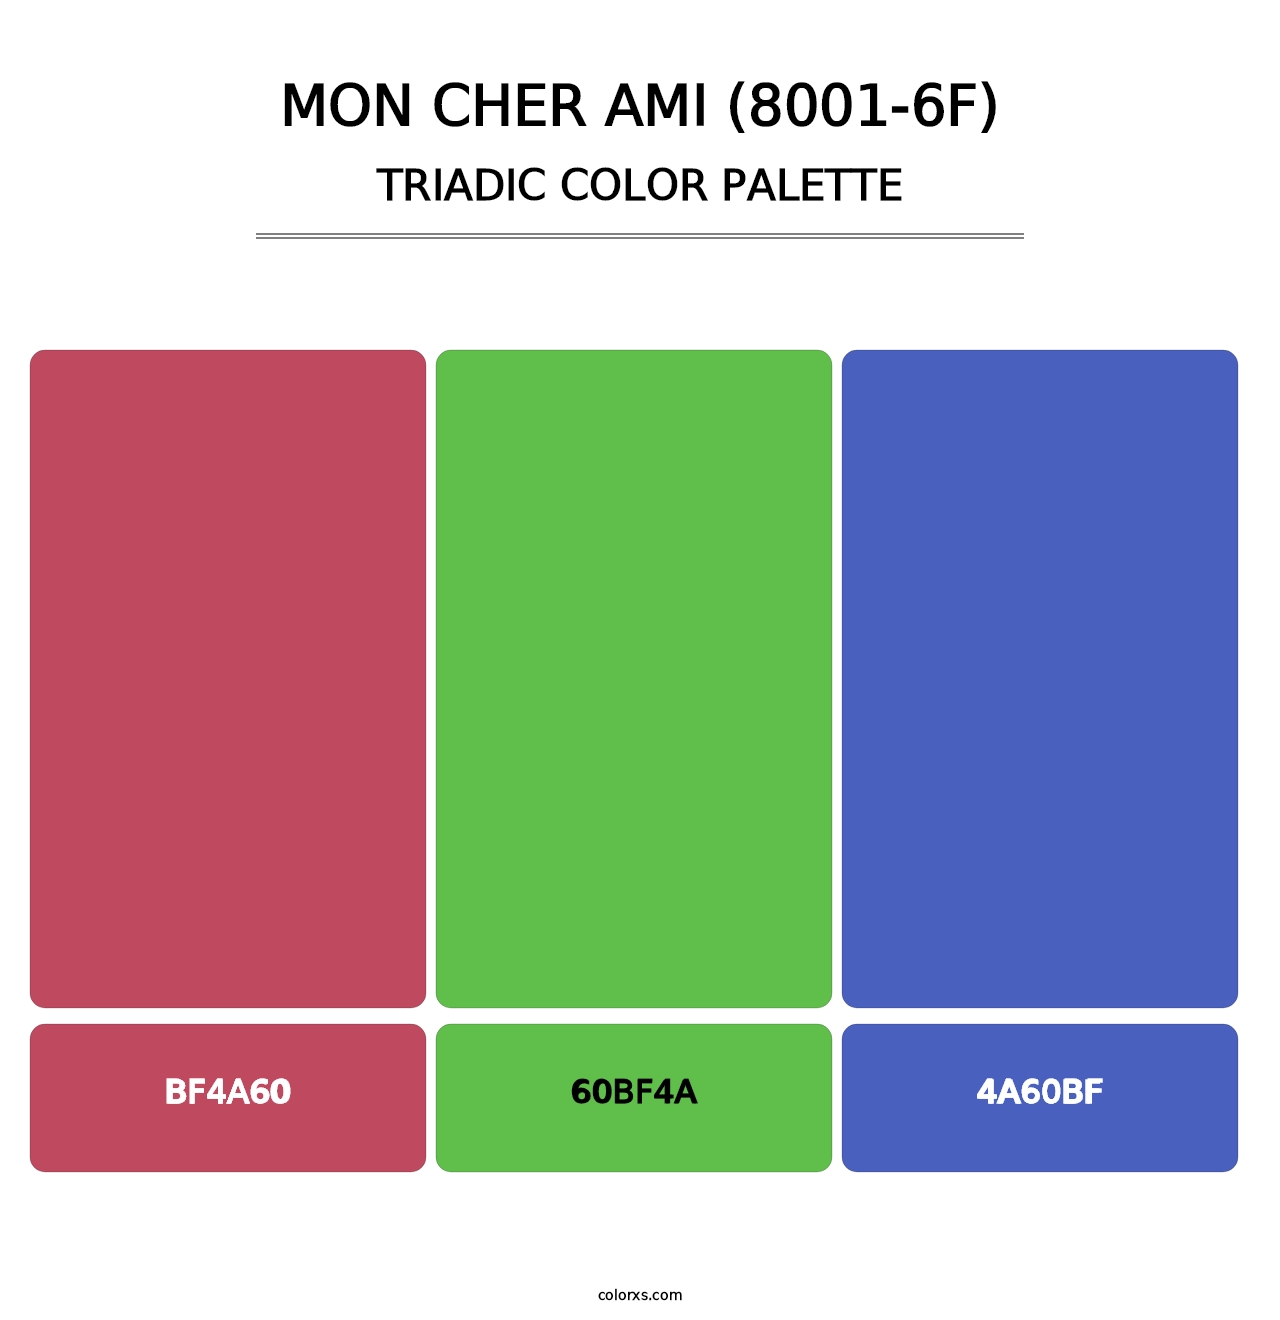 Mon Cher Ami (8001-6F) - Triadic Color Palette